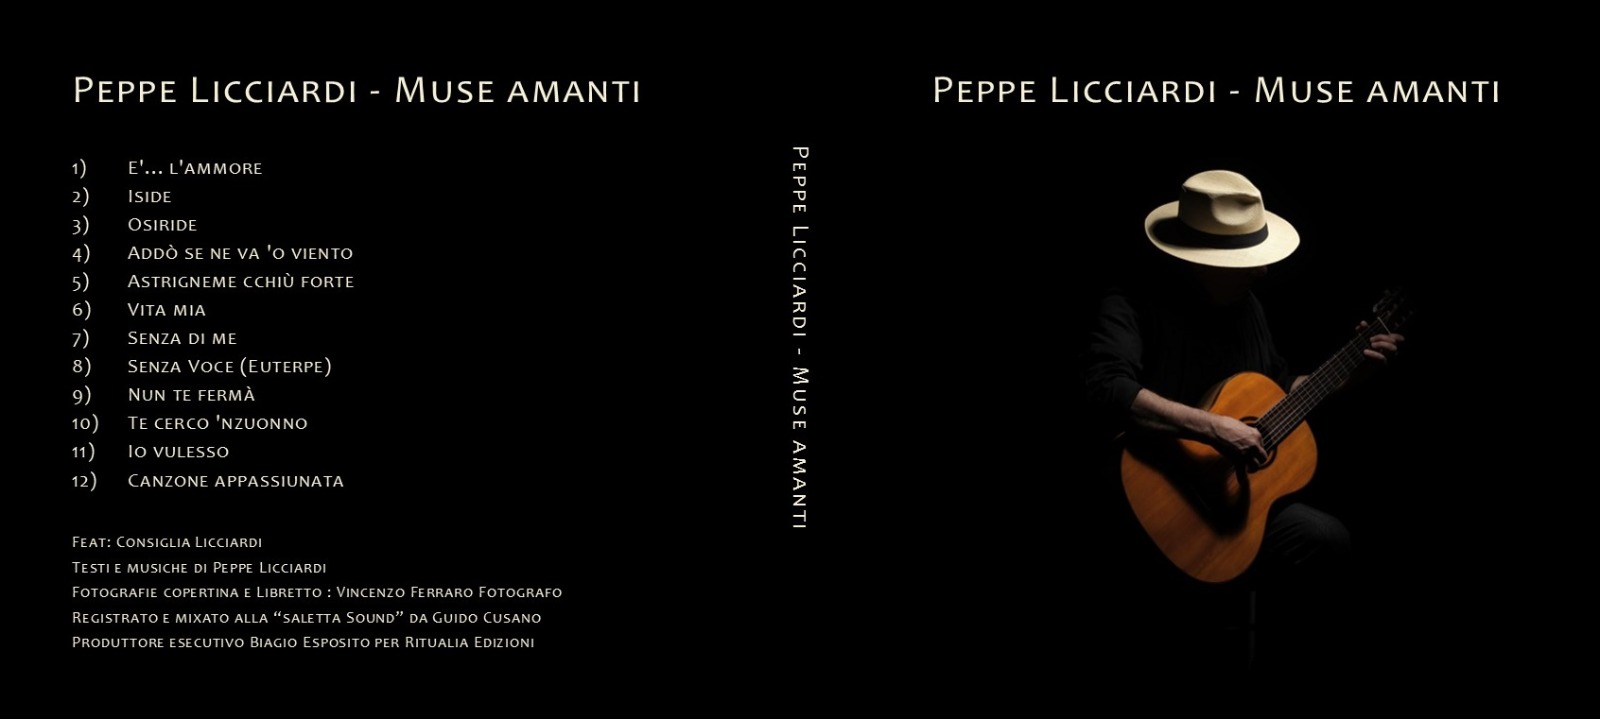 Napoli: Muse Amanti, ultimo lavoro discografico di Peppe Licciardi        